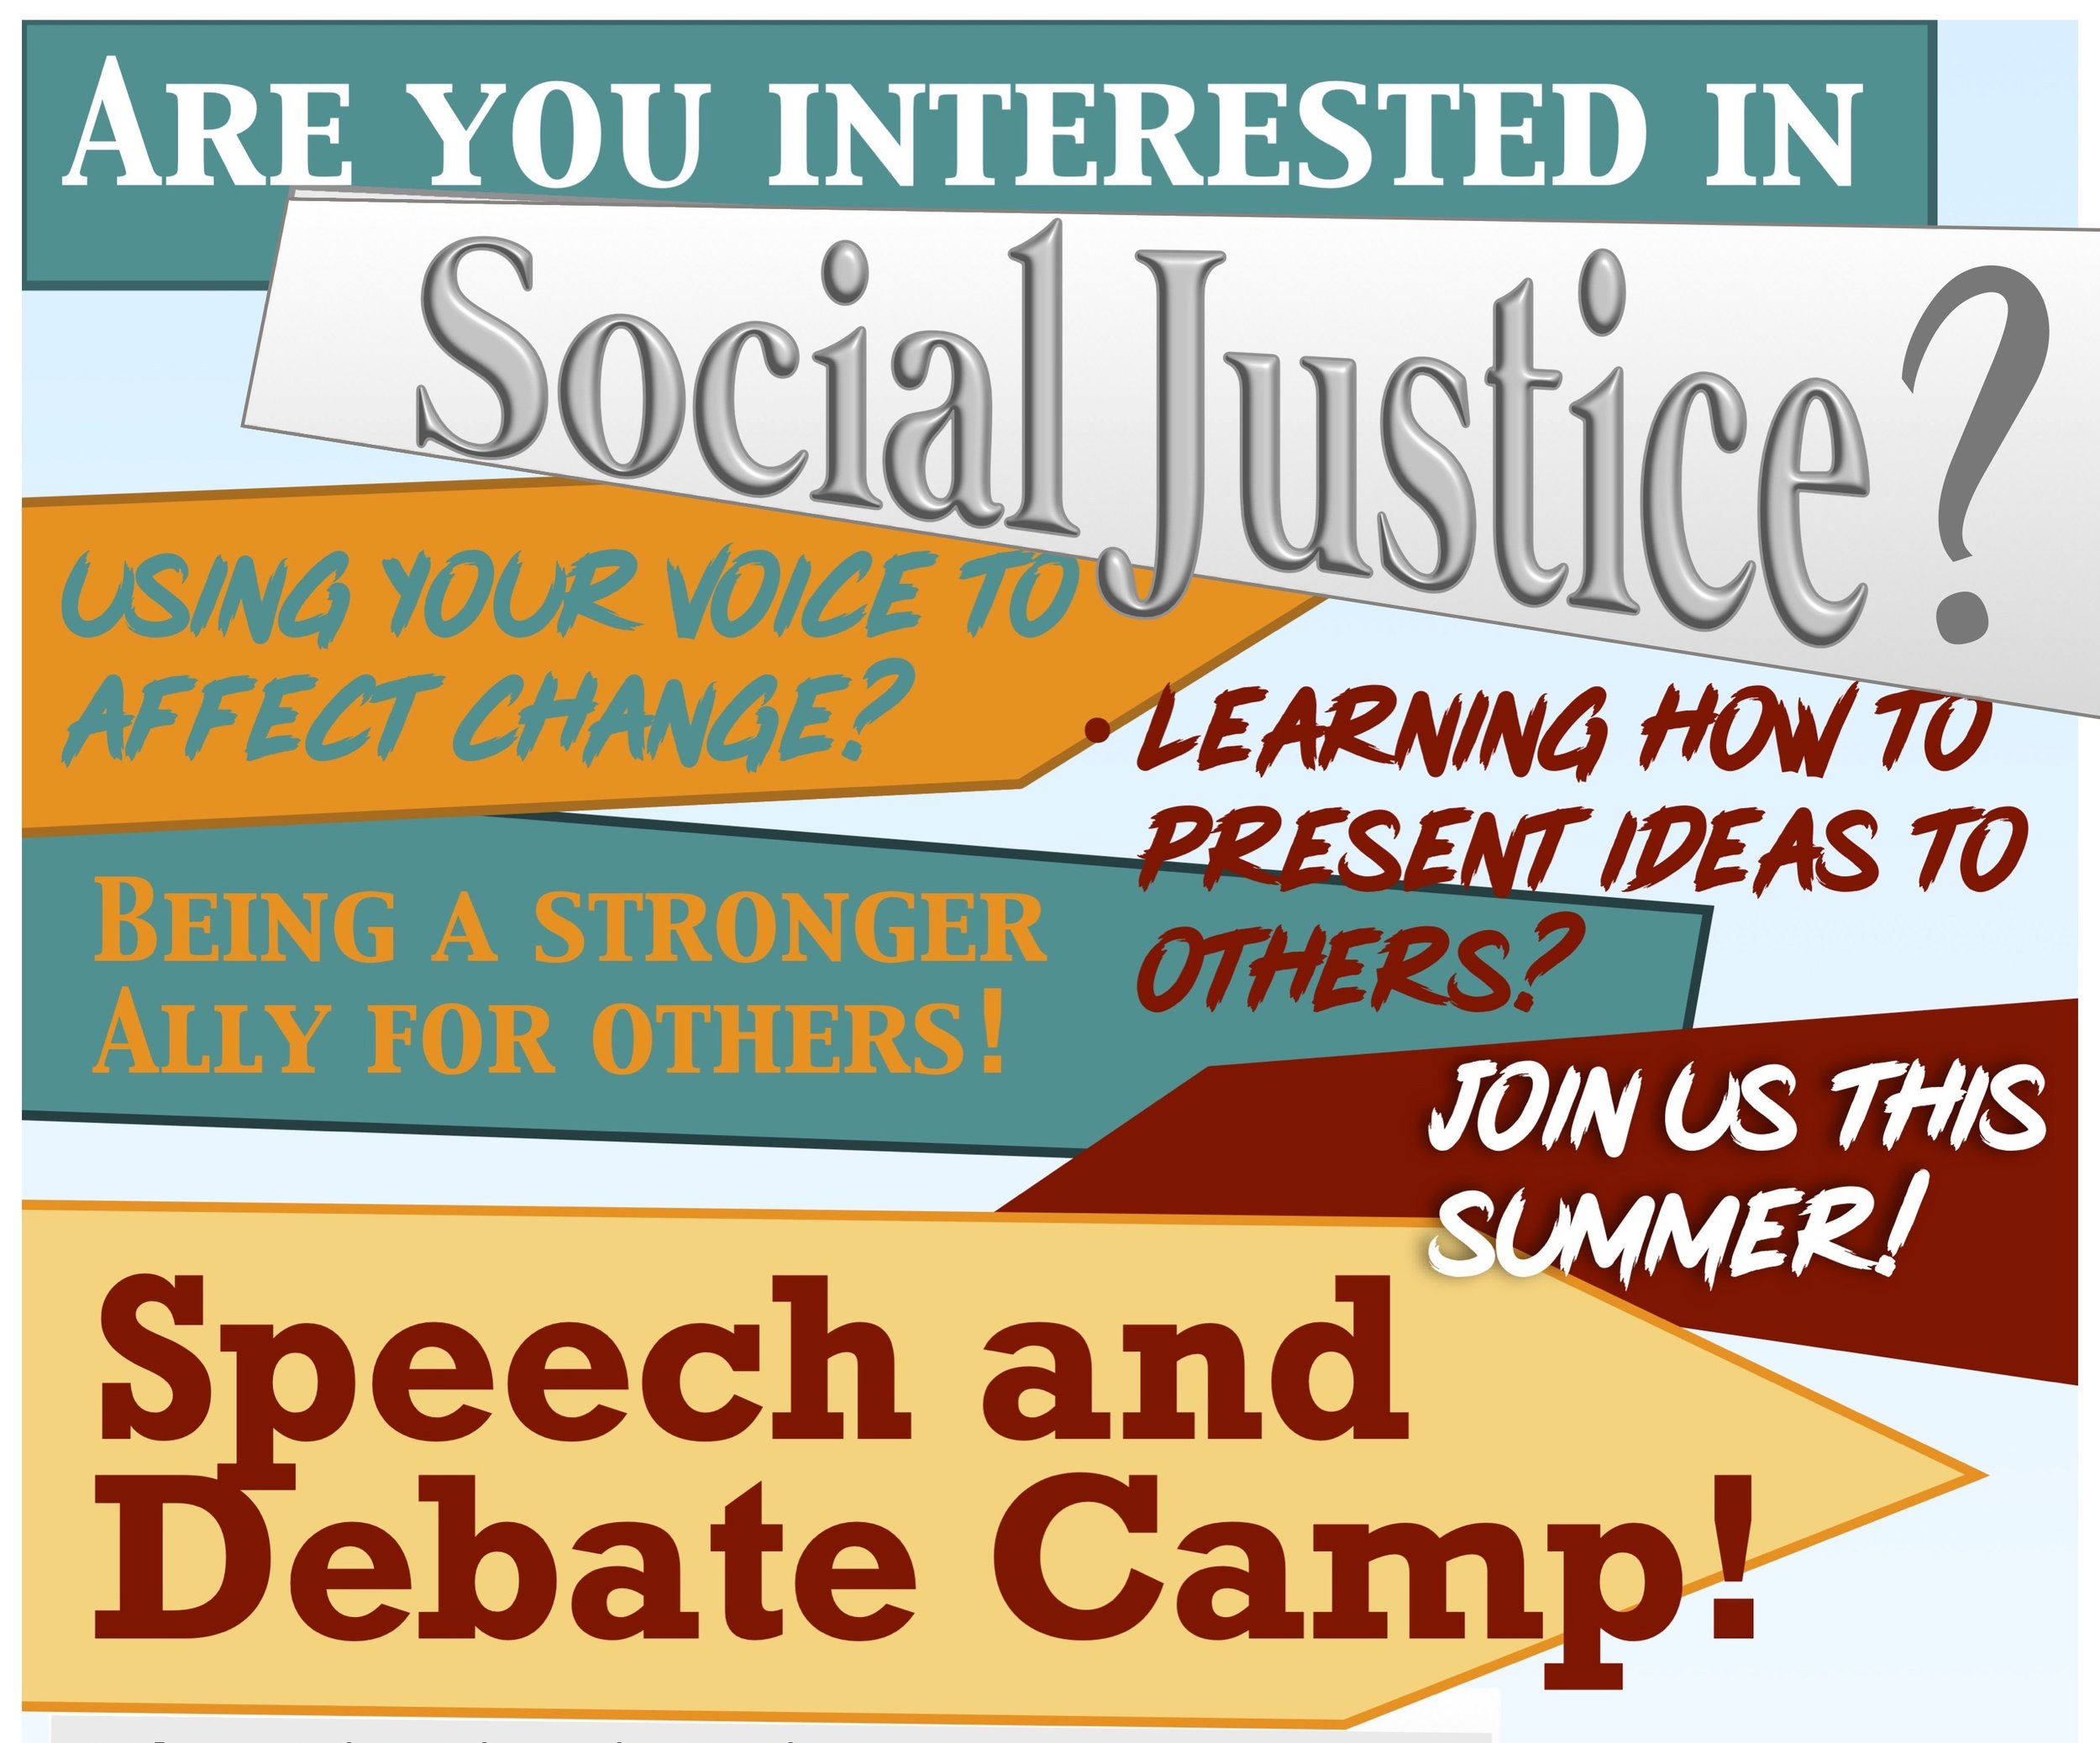 Capitol Debate: Public Speaking & Debate Summer Camps - Summer